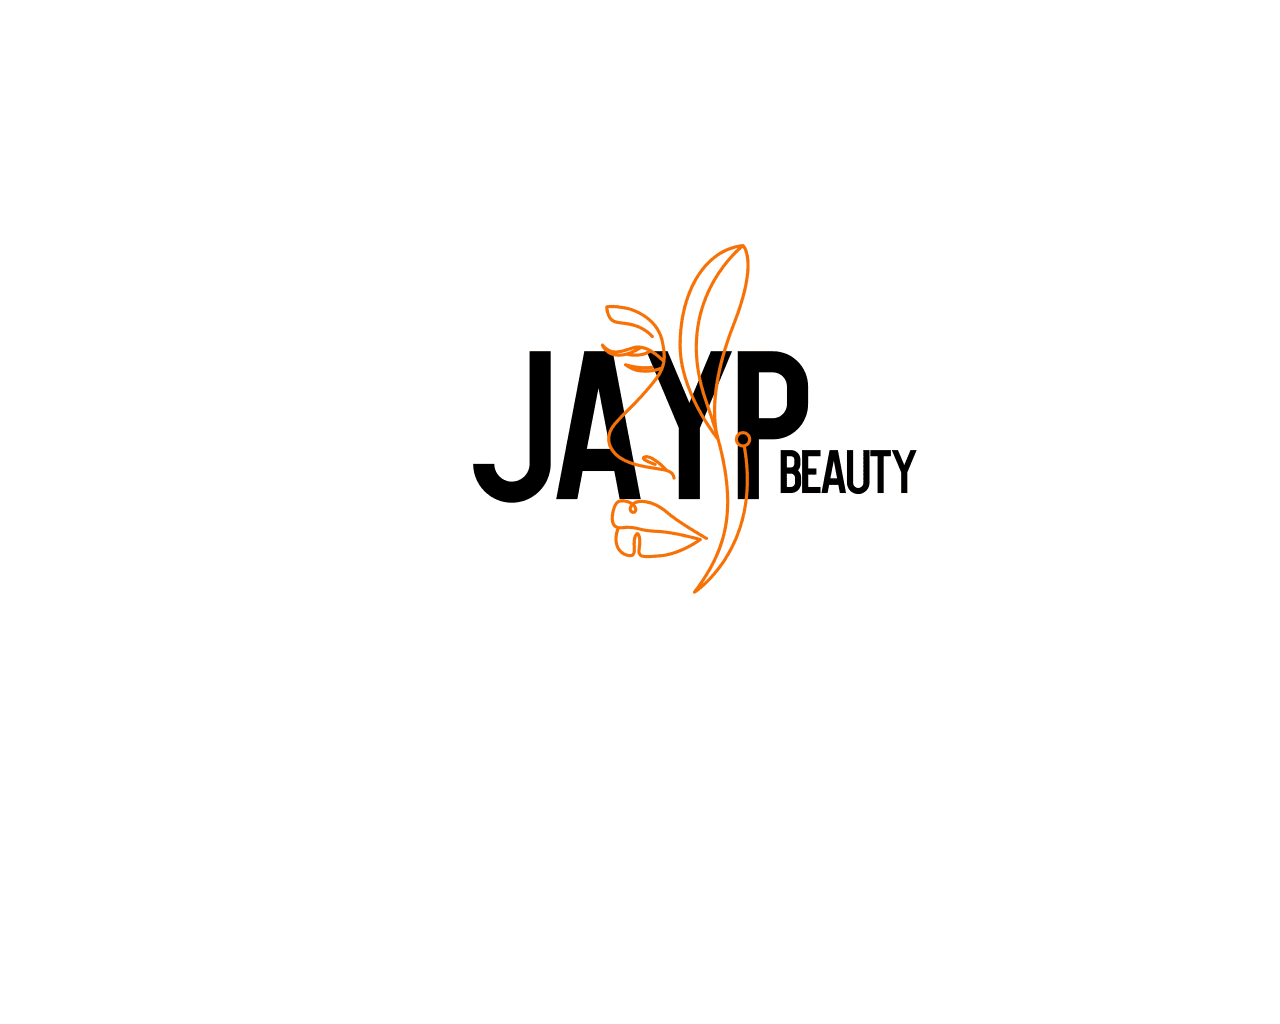 Jay P Beauty